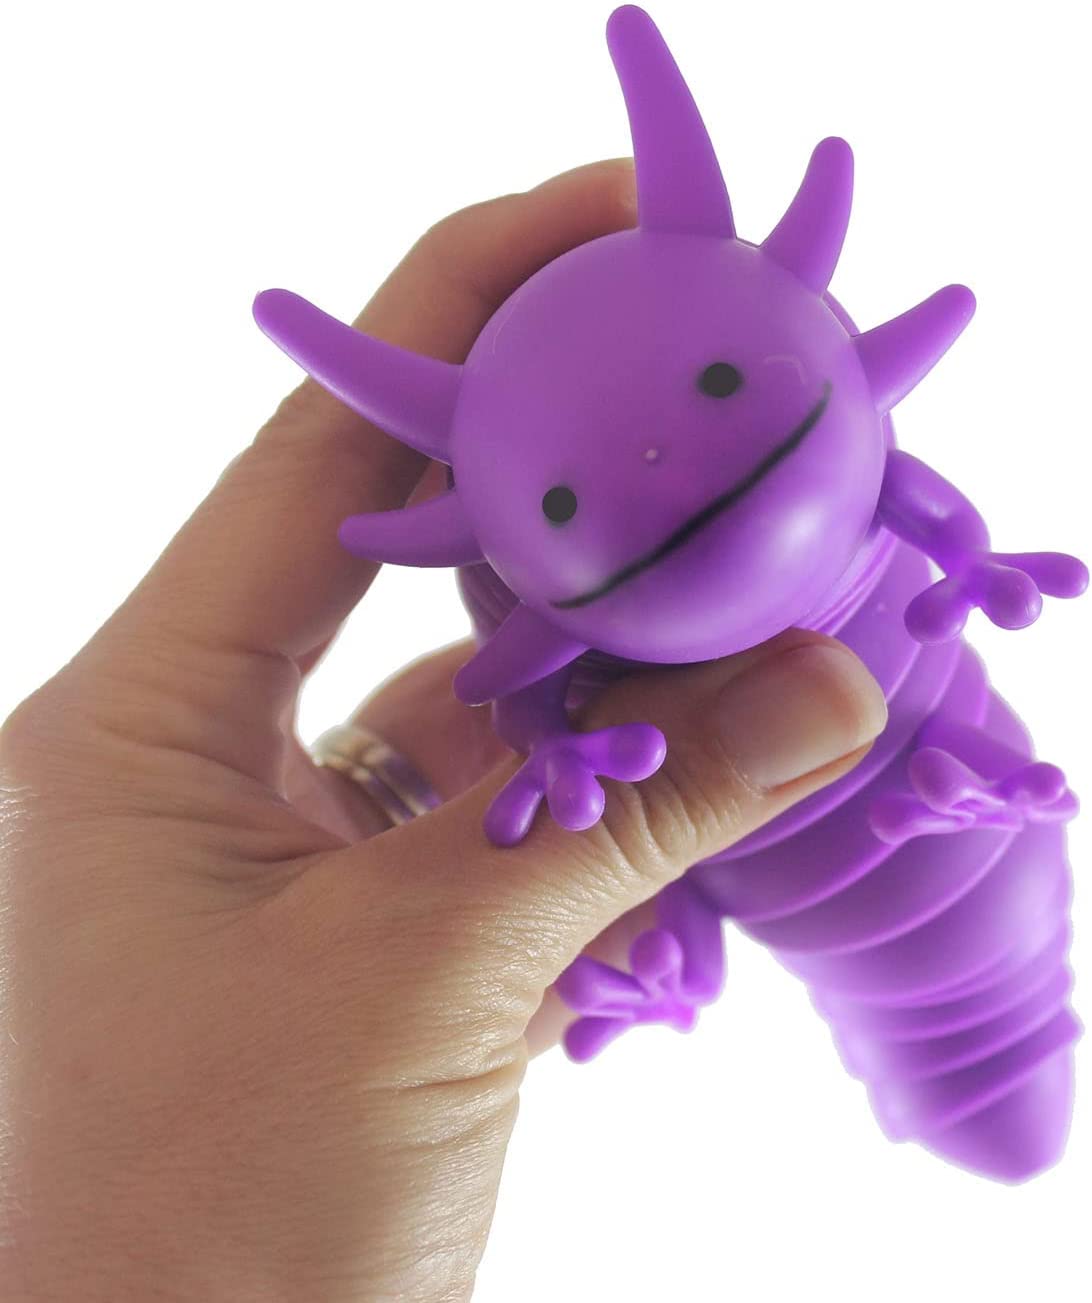 A hand with light skin tone holds up a purple Wiggle Sensory Axolotl.